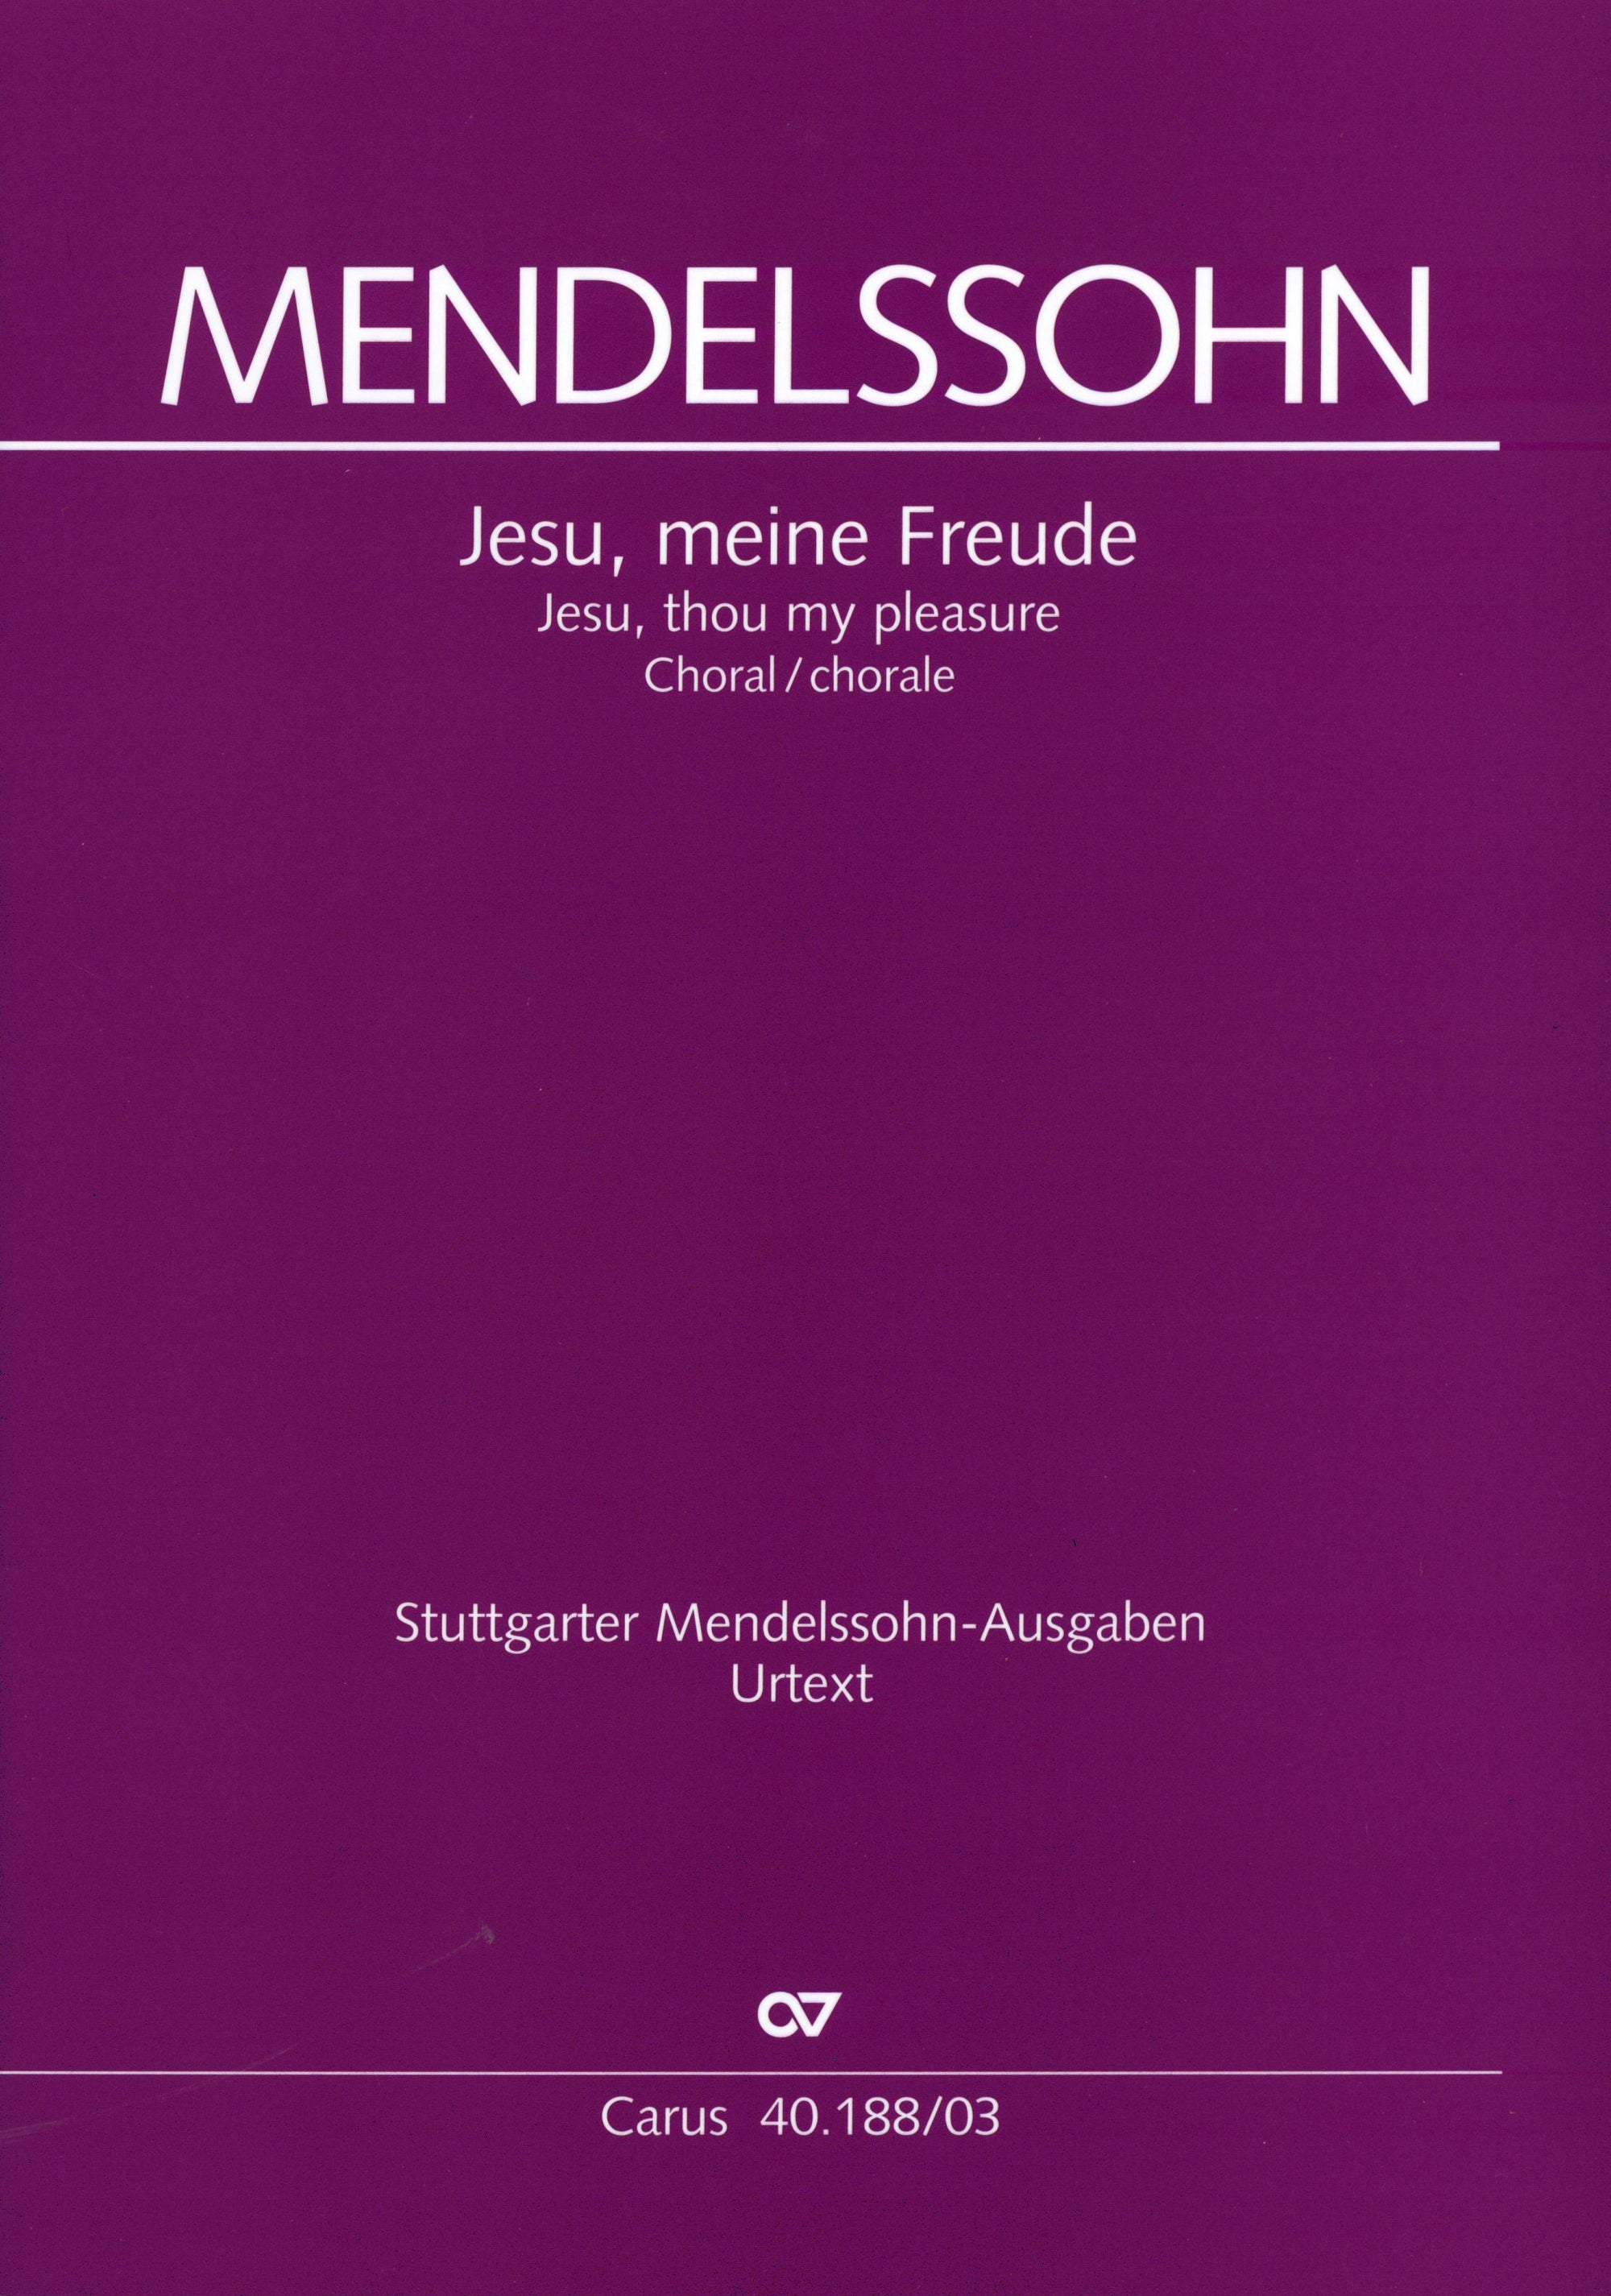 Mendelssohn: Jesu, meine Freude